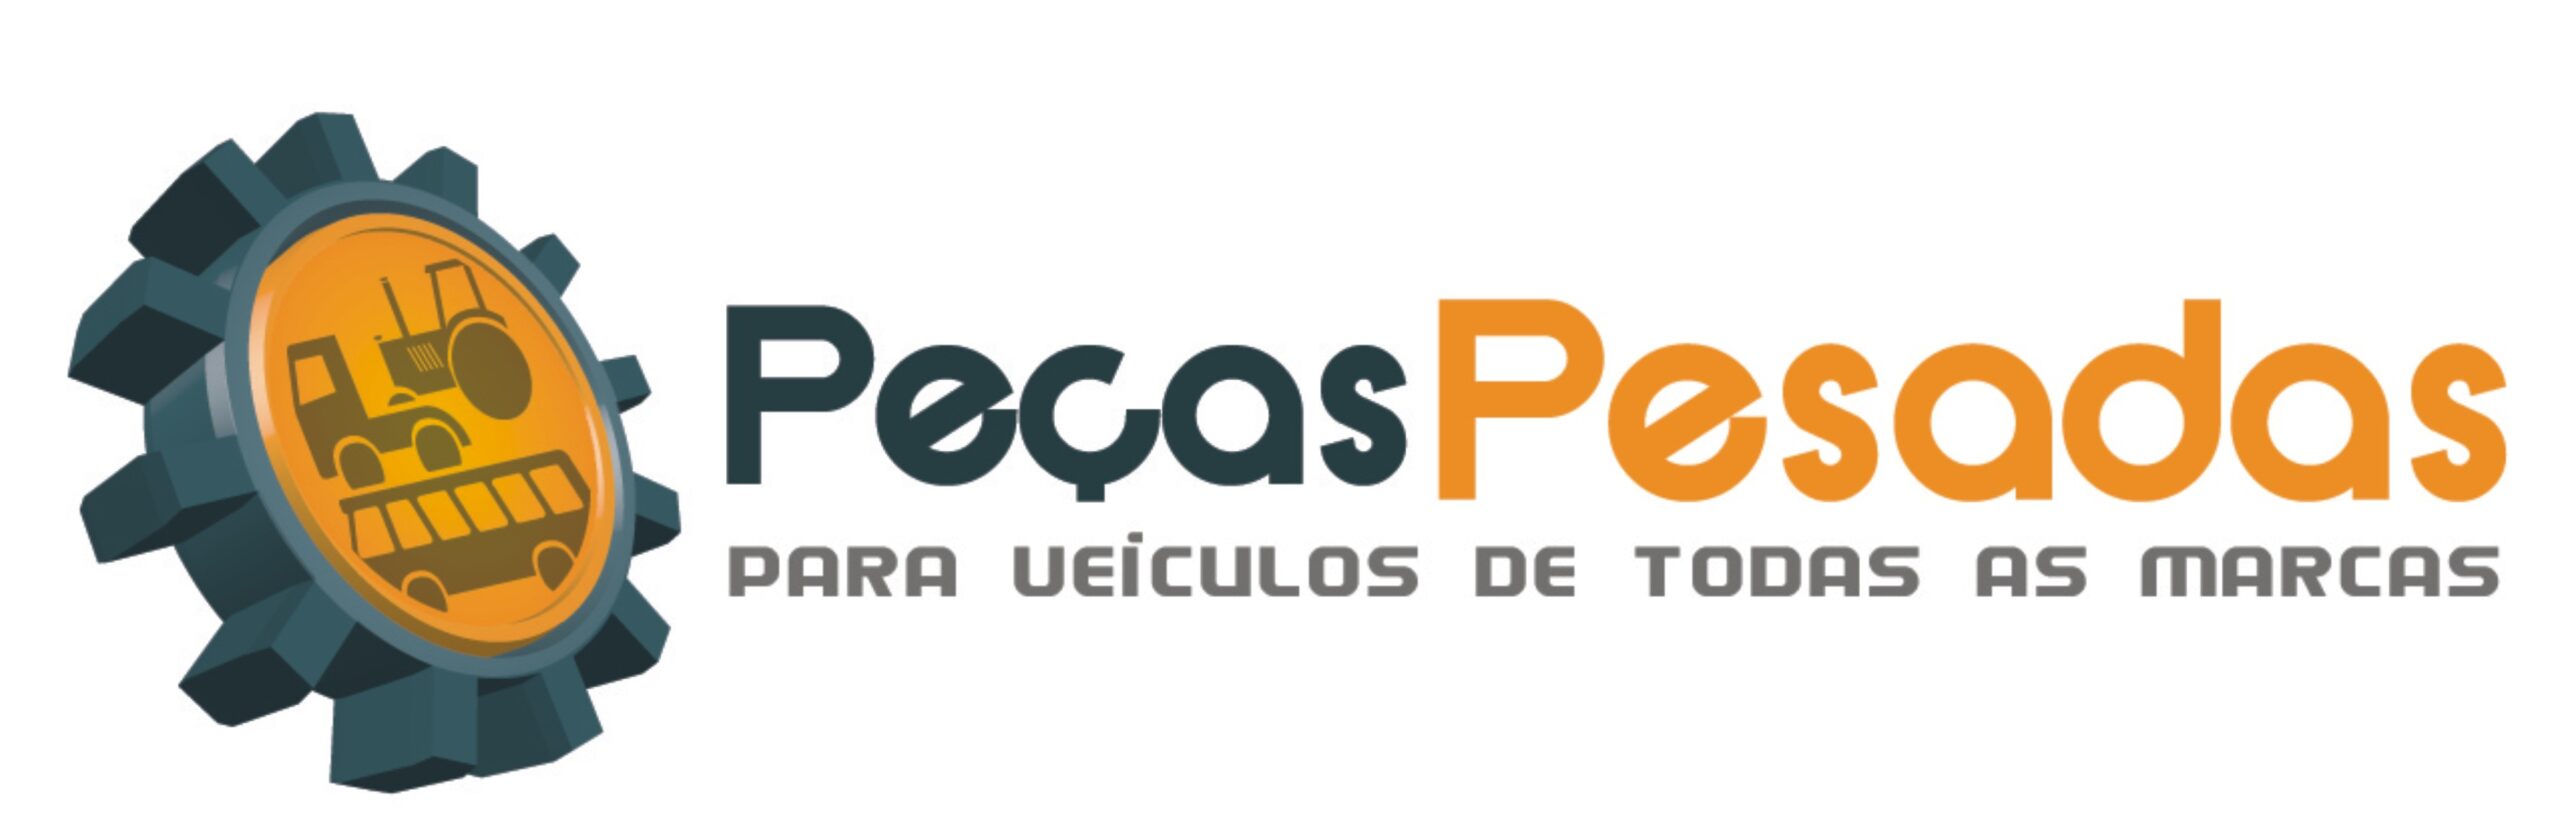 Nova-Logo-Pecas-Pesadas-scaled.jpg